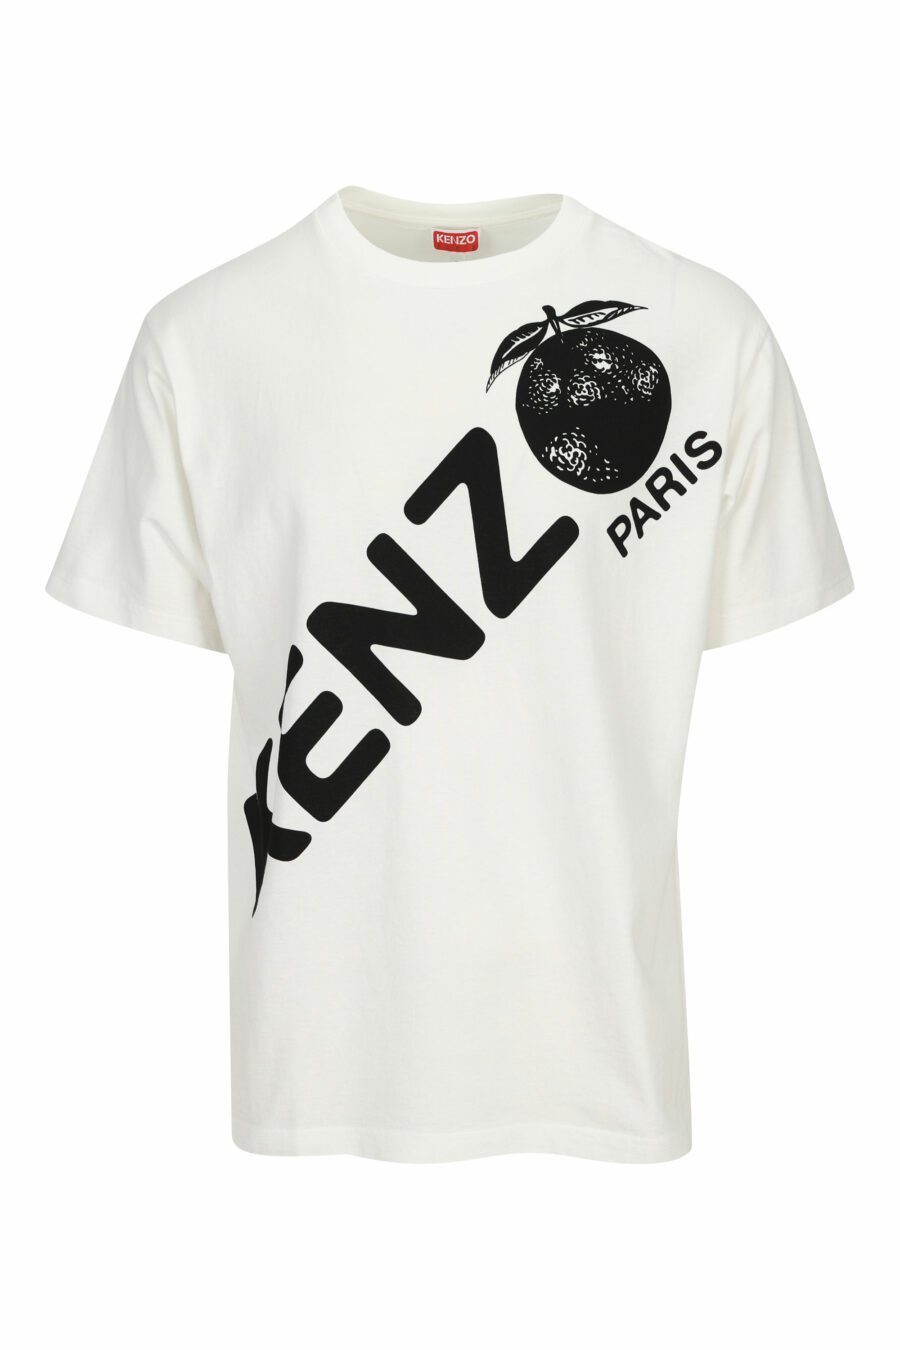 Camiseta blanca con maxilogo diagonal "kenzo orange" - 3612230627000